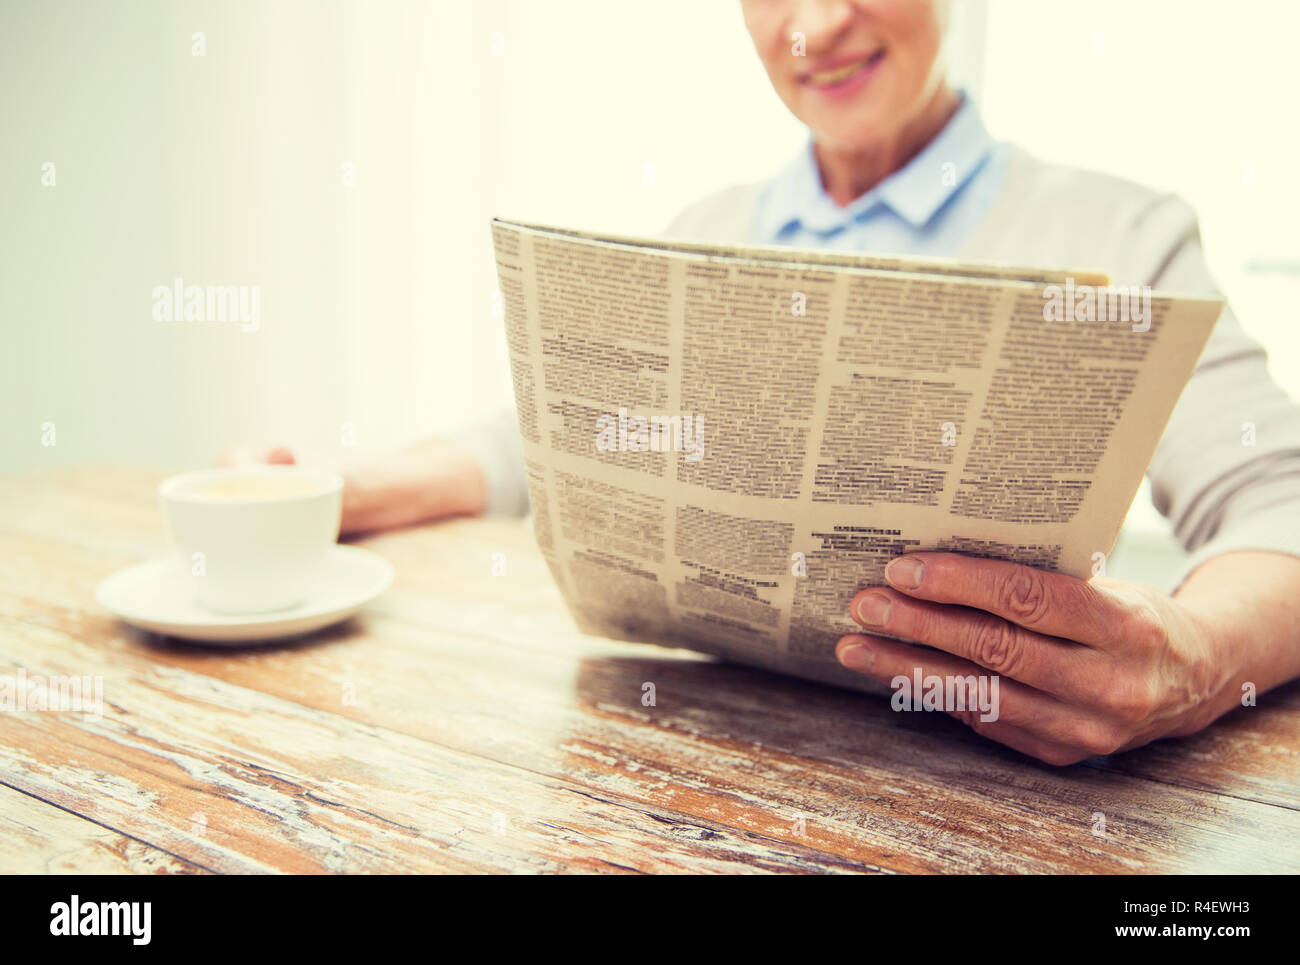 Стала читаемой газетой. Человек с газетой. Газета в руках. Девушка с газетой. Фото с газетой в руках.